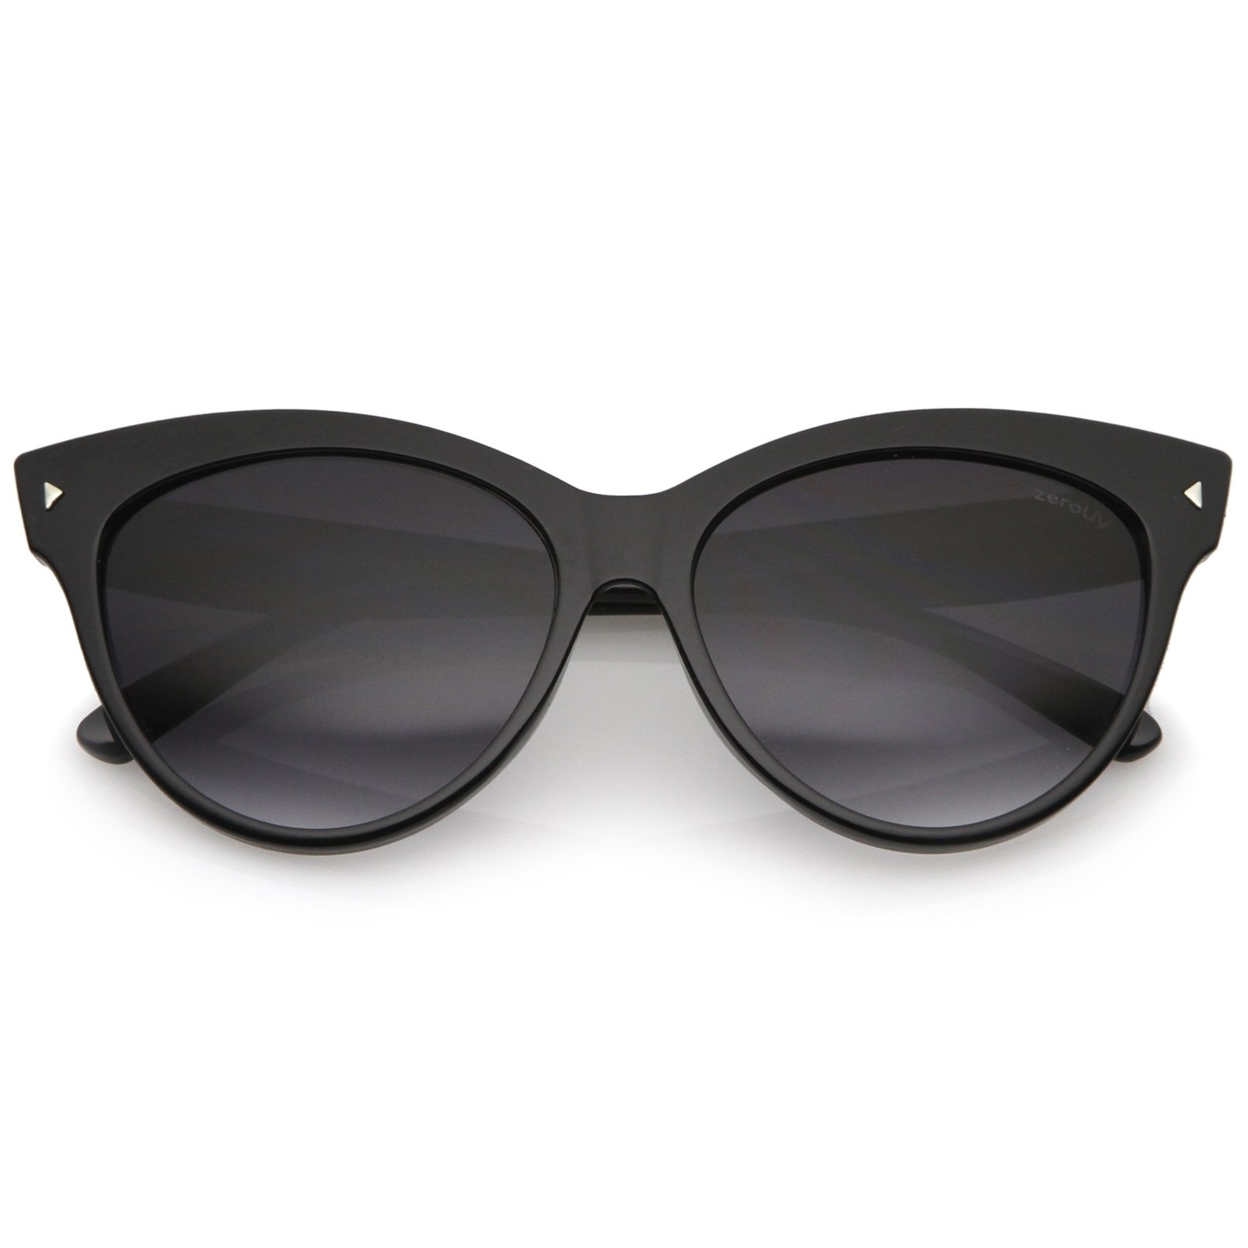 Women's Mod Oversize Horn Rimmed Cat Eye Sunglasses 52mm - Tortoise / Amber